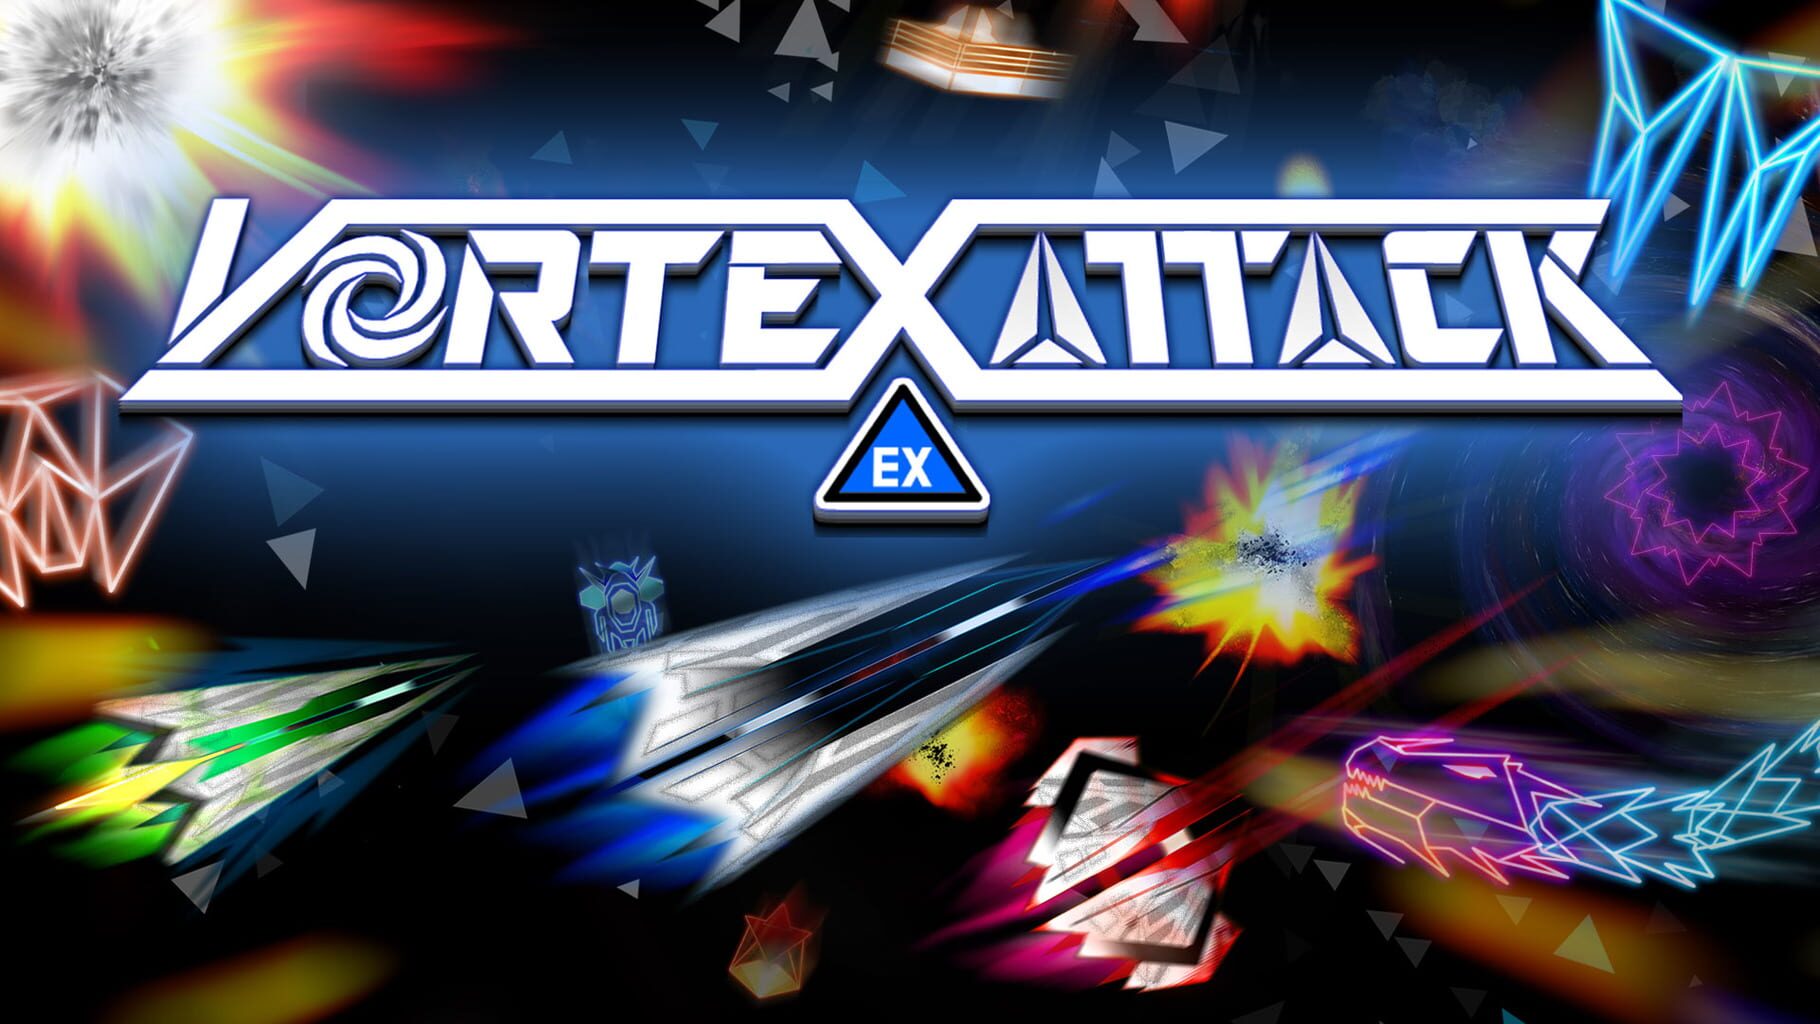 Vortex Attack EX artwork